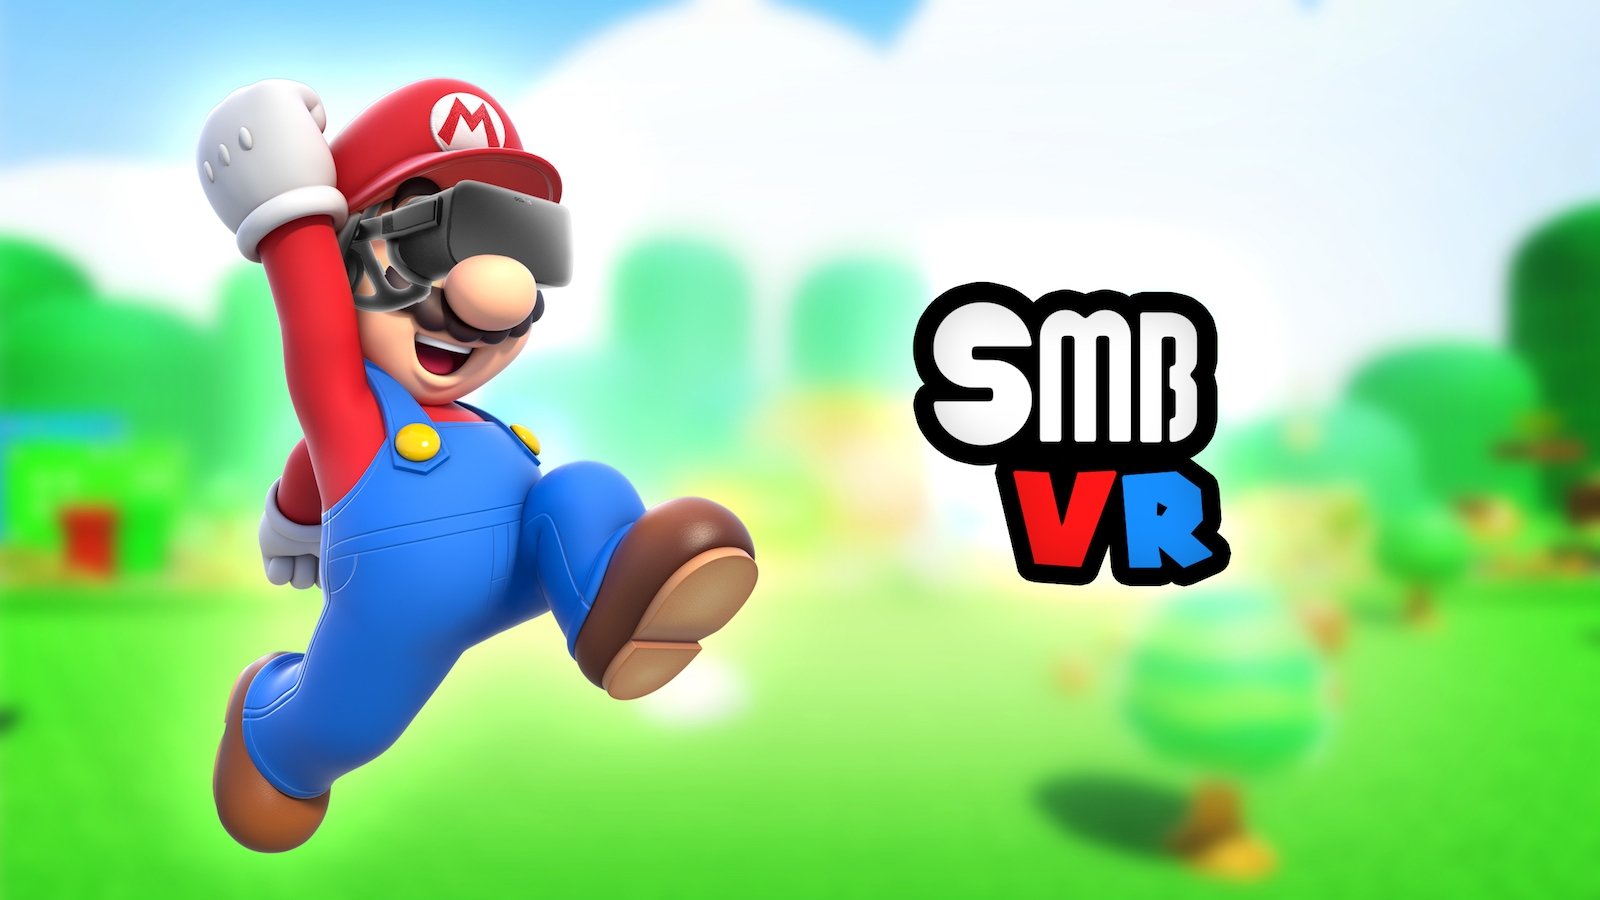 Esta versión de Super Mario Bros. en realidad virtual te hará sentir como Mario